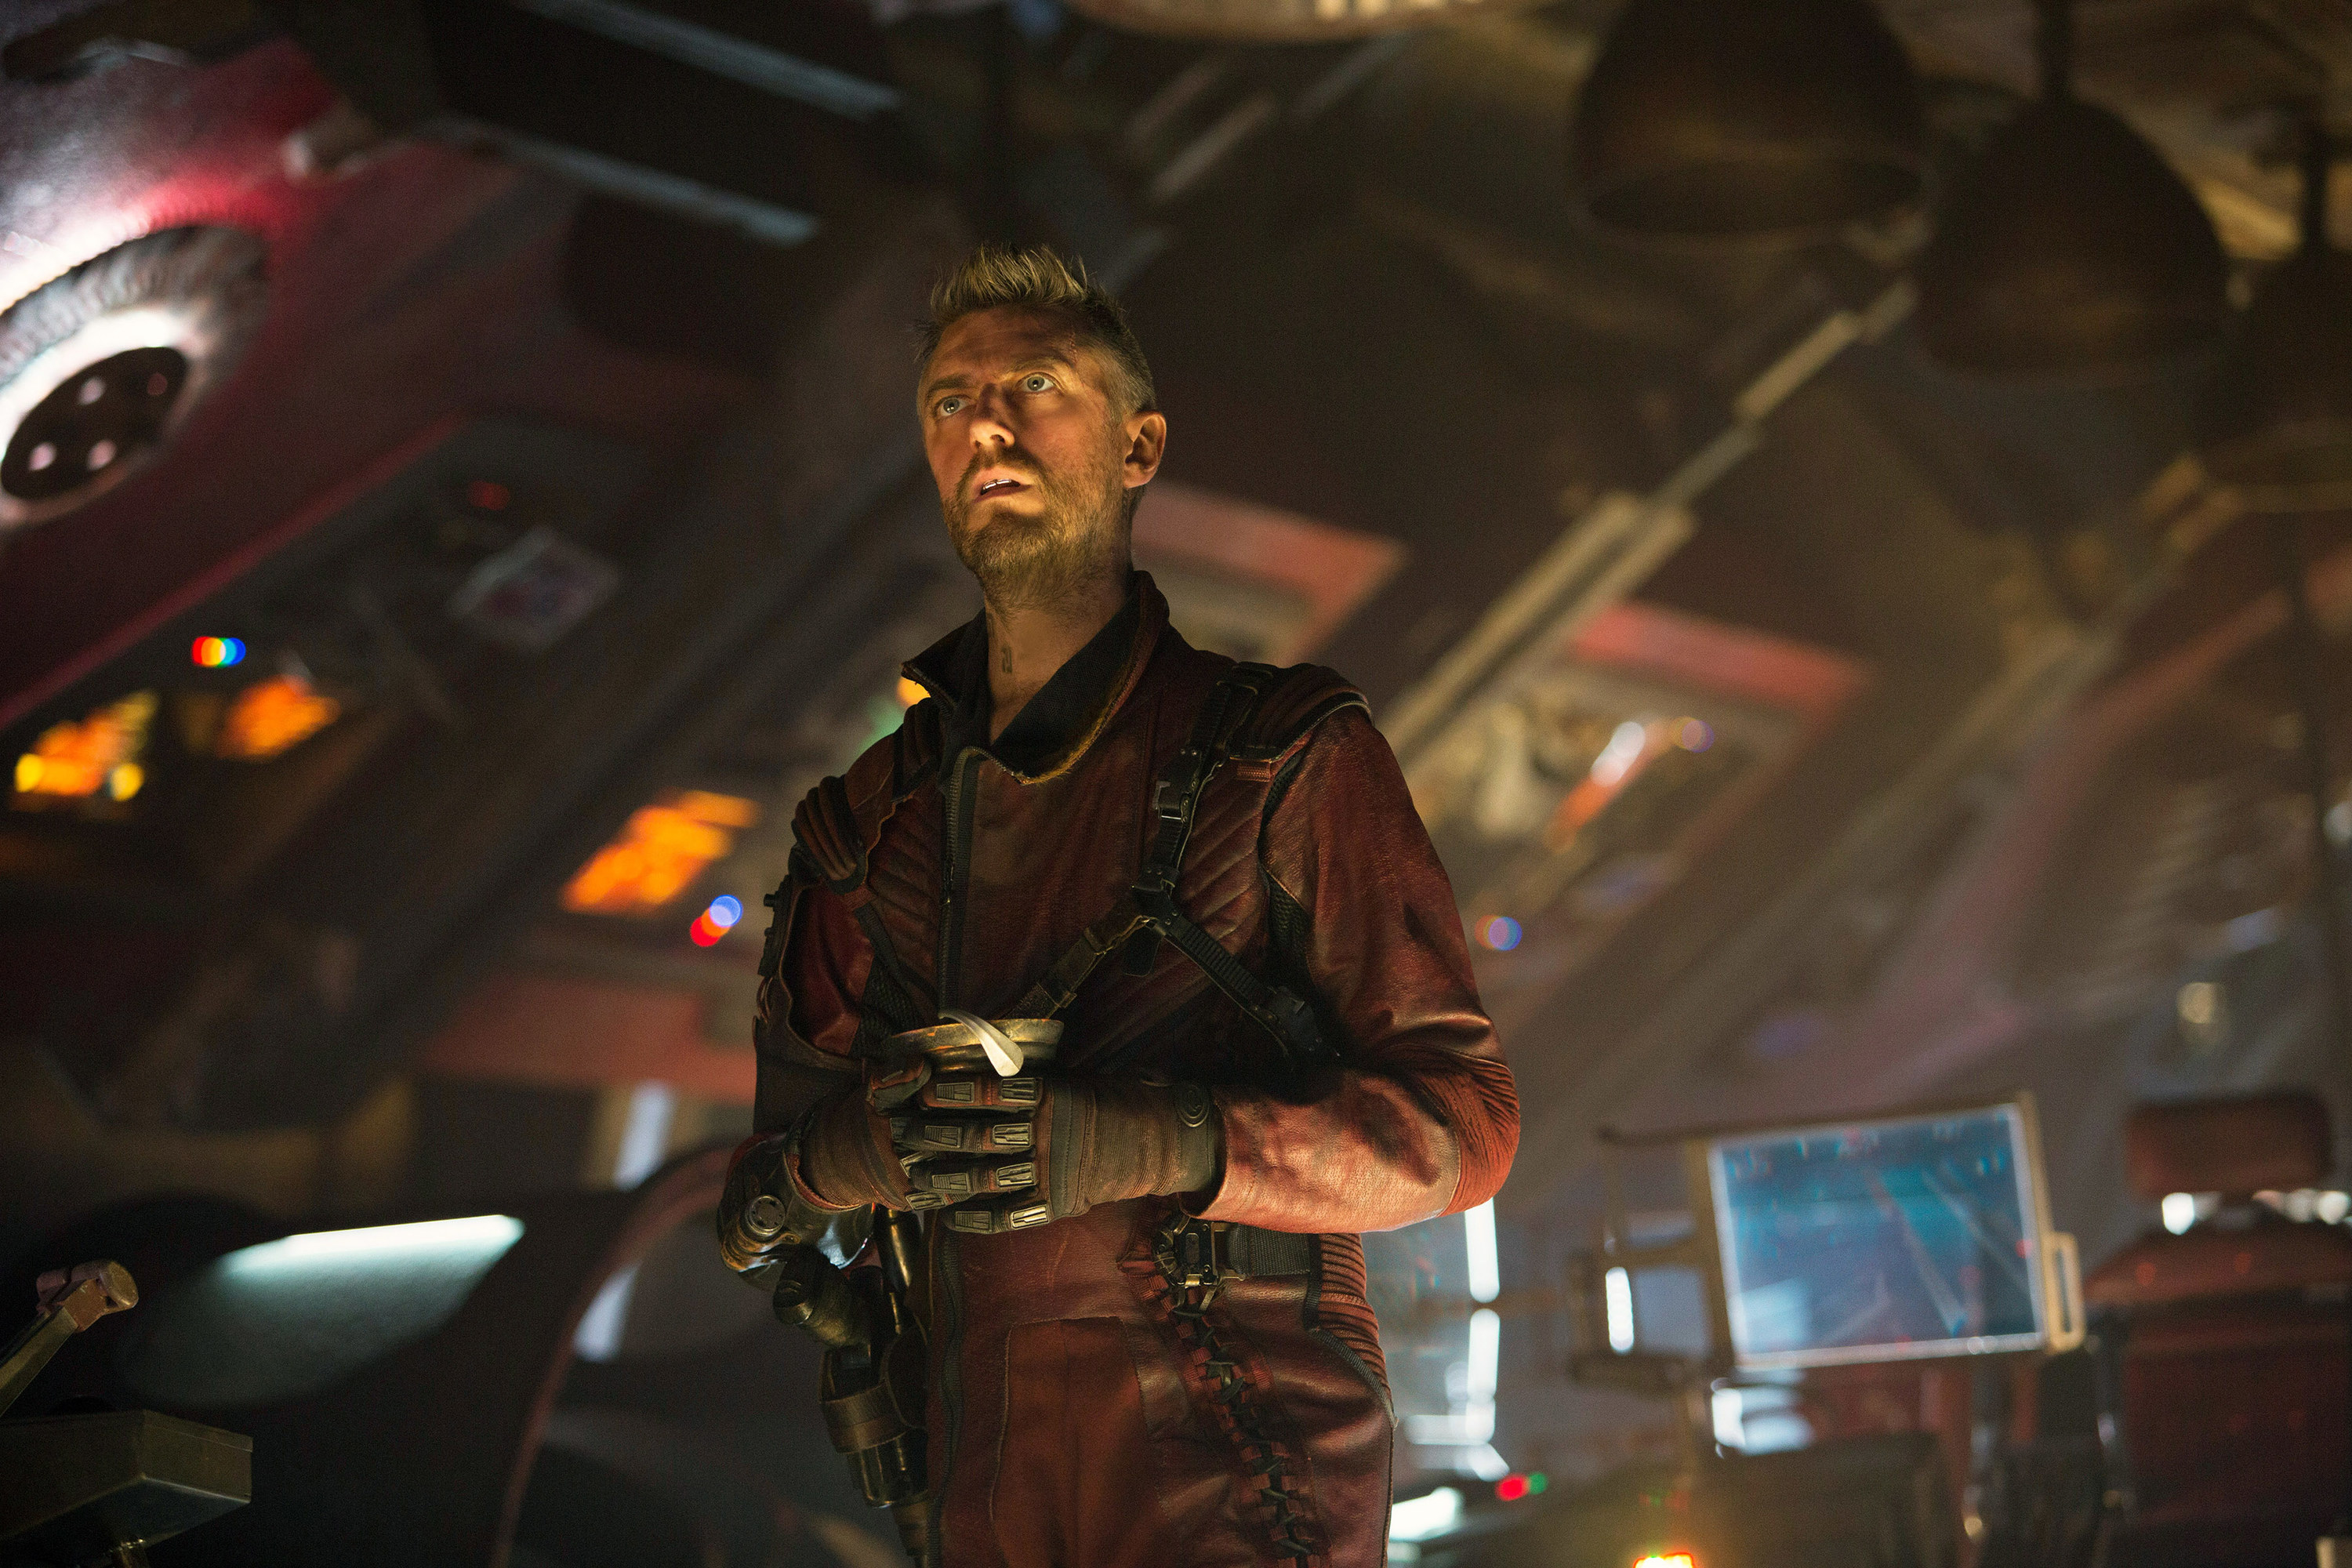 Sean as Kraglin in the spaceship